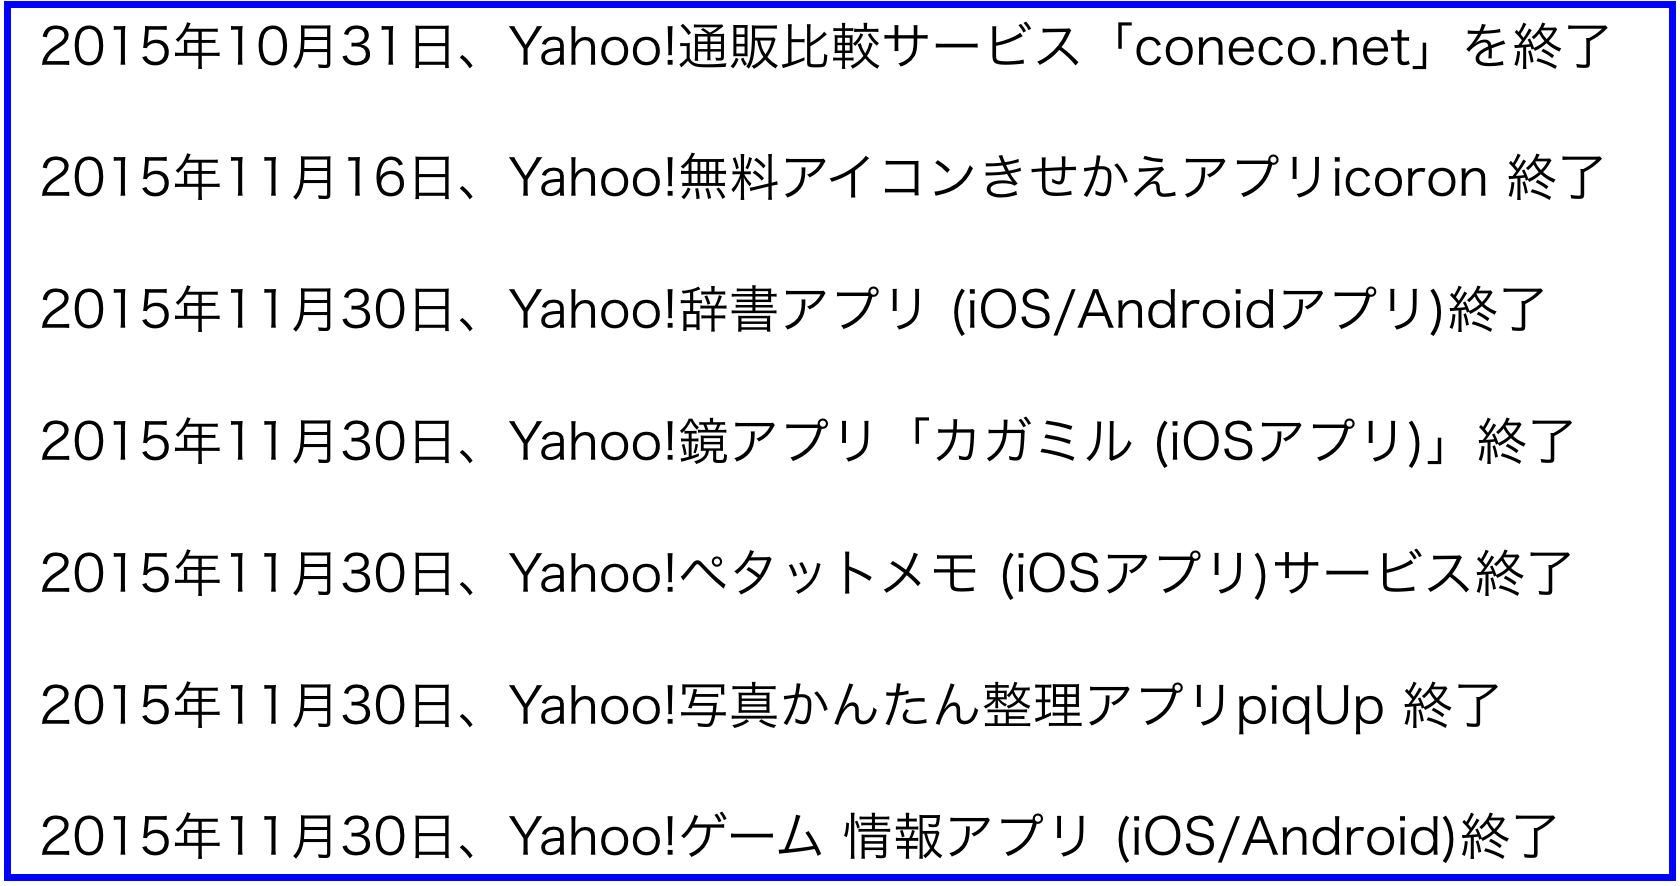 2015年(平成27年)11月から変わること:Yahoo!関連終了も